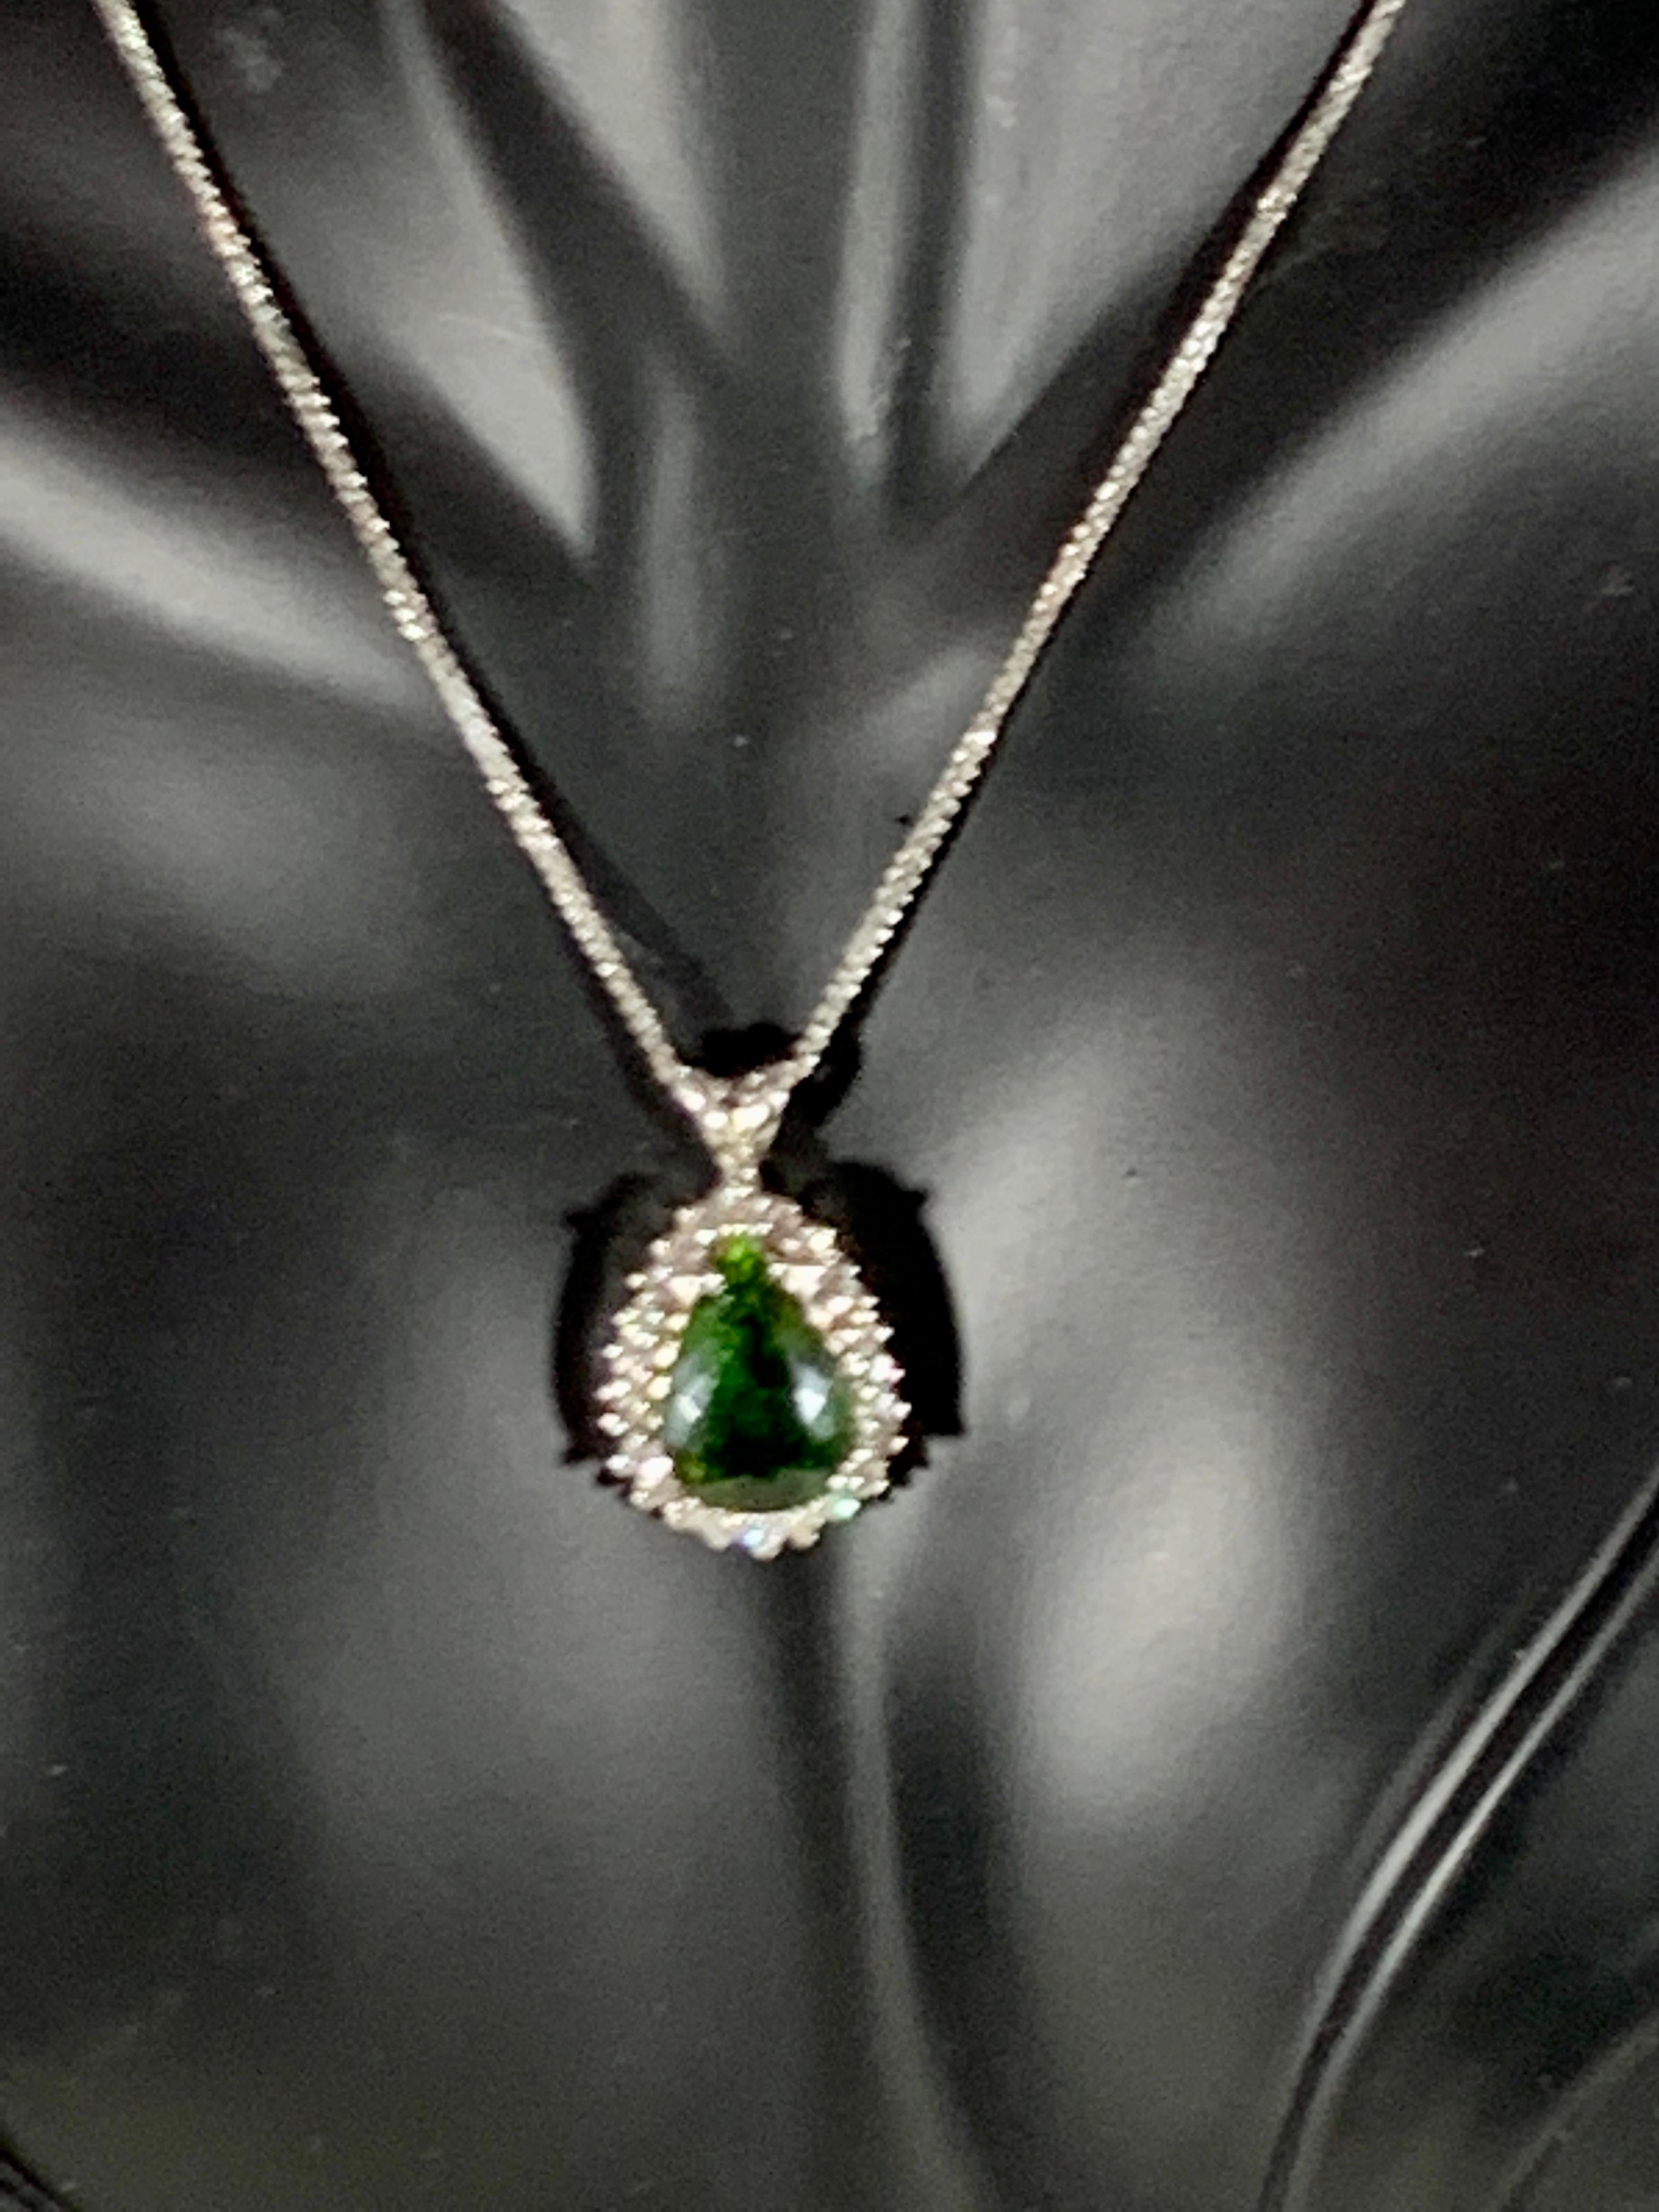 8 Carat Green Tourmaline and 1.5 Carat Diamond Pendant or Necklace 14 Karat Gold 2